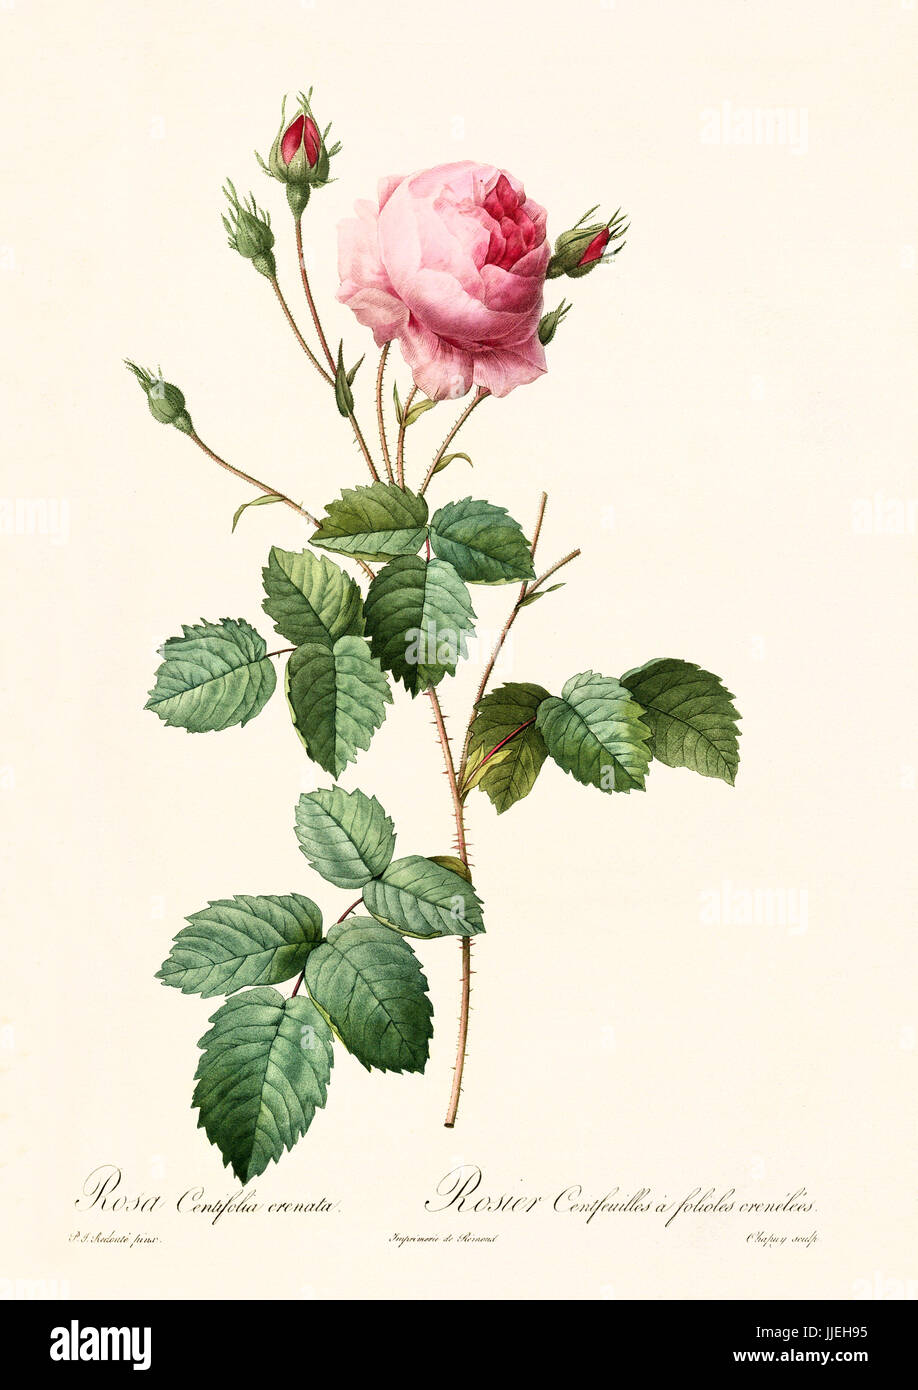 Vecchia illustrazione di rosa centifolia creanata. Creato da P. R. Redoute, pubblicato su Les Roses, Imp. Firmin Didot, Parigi, 1817-24 Foto Stock